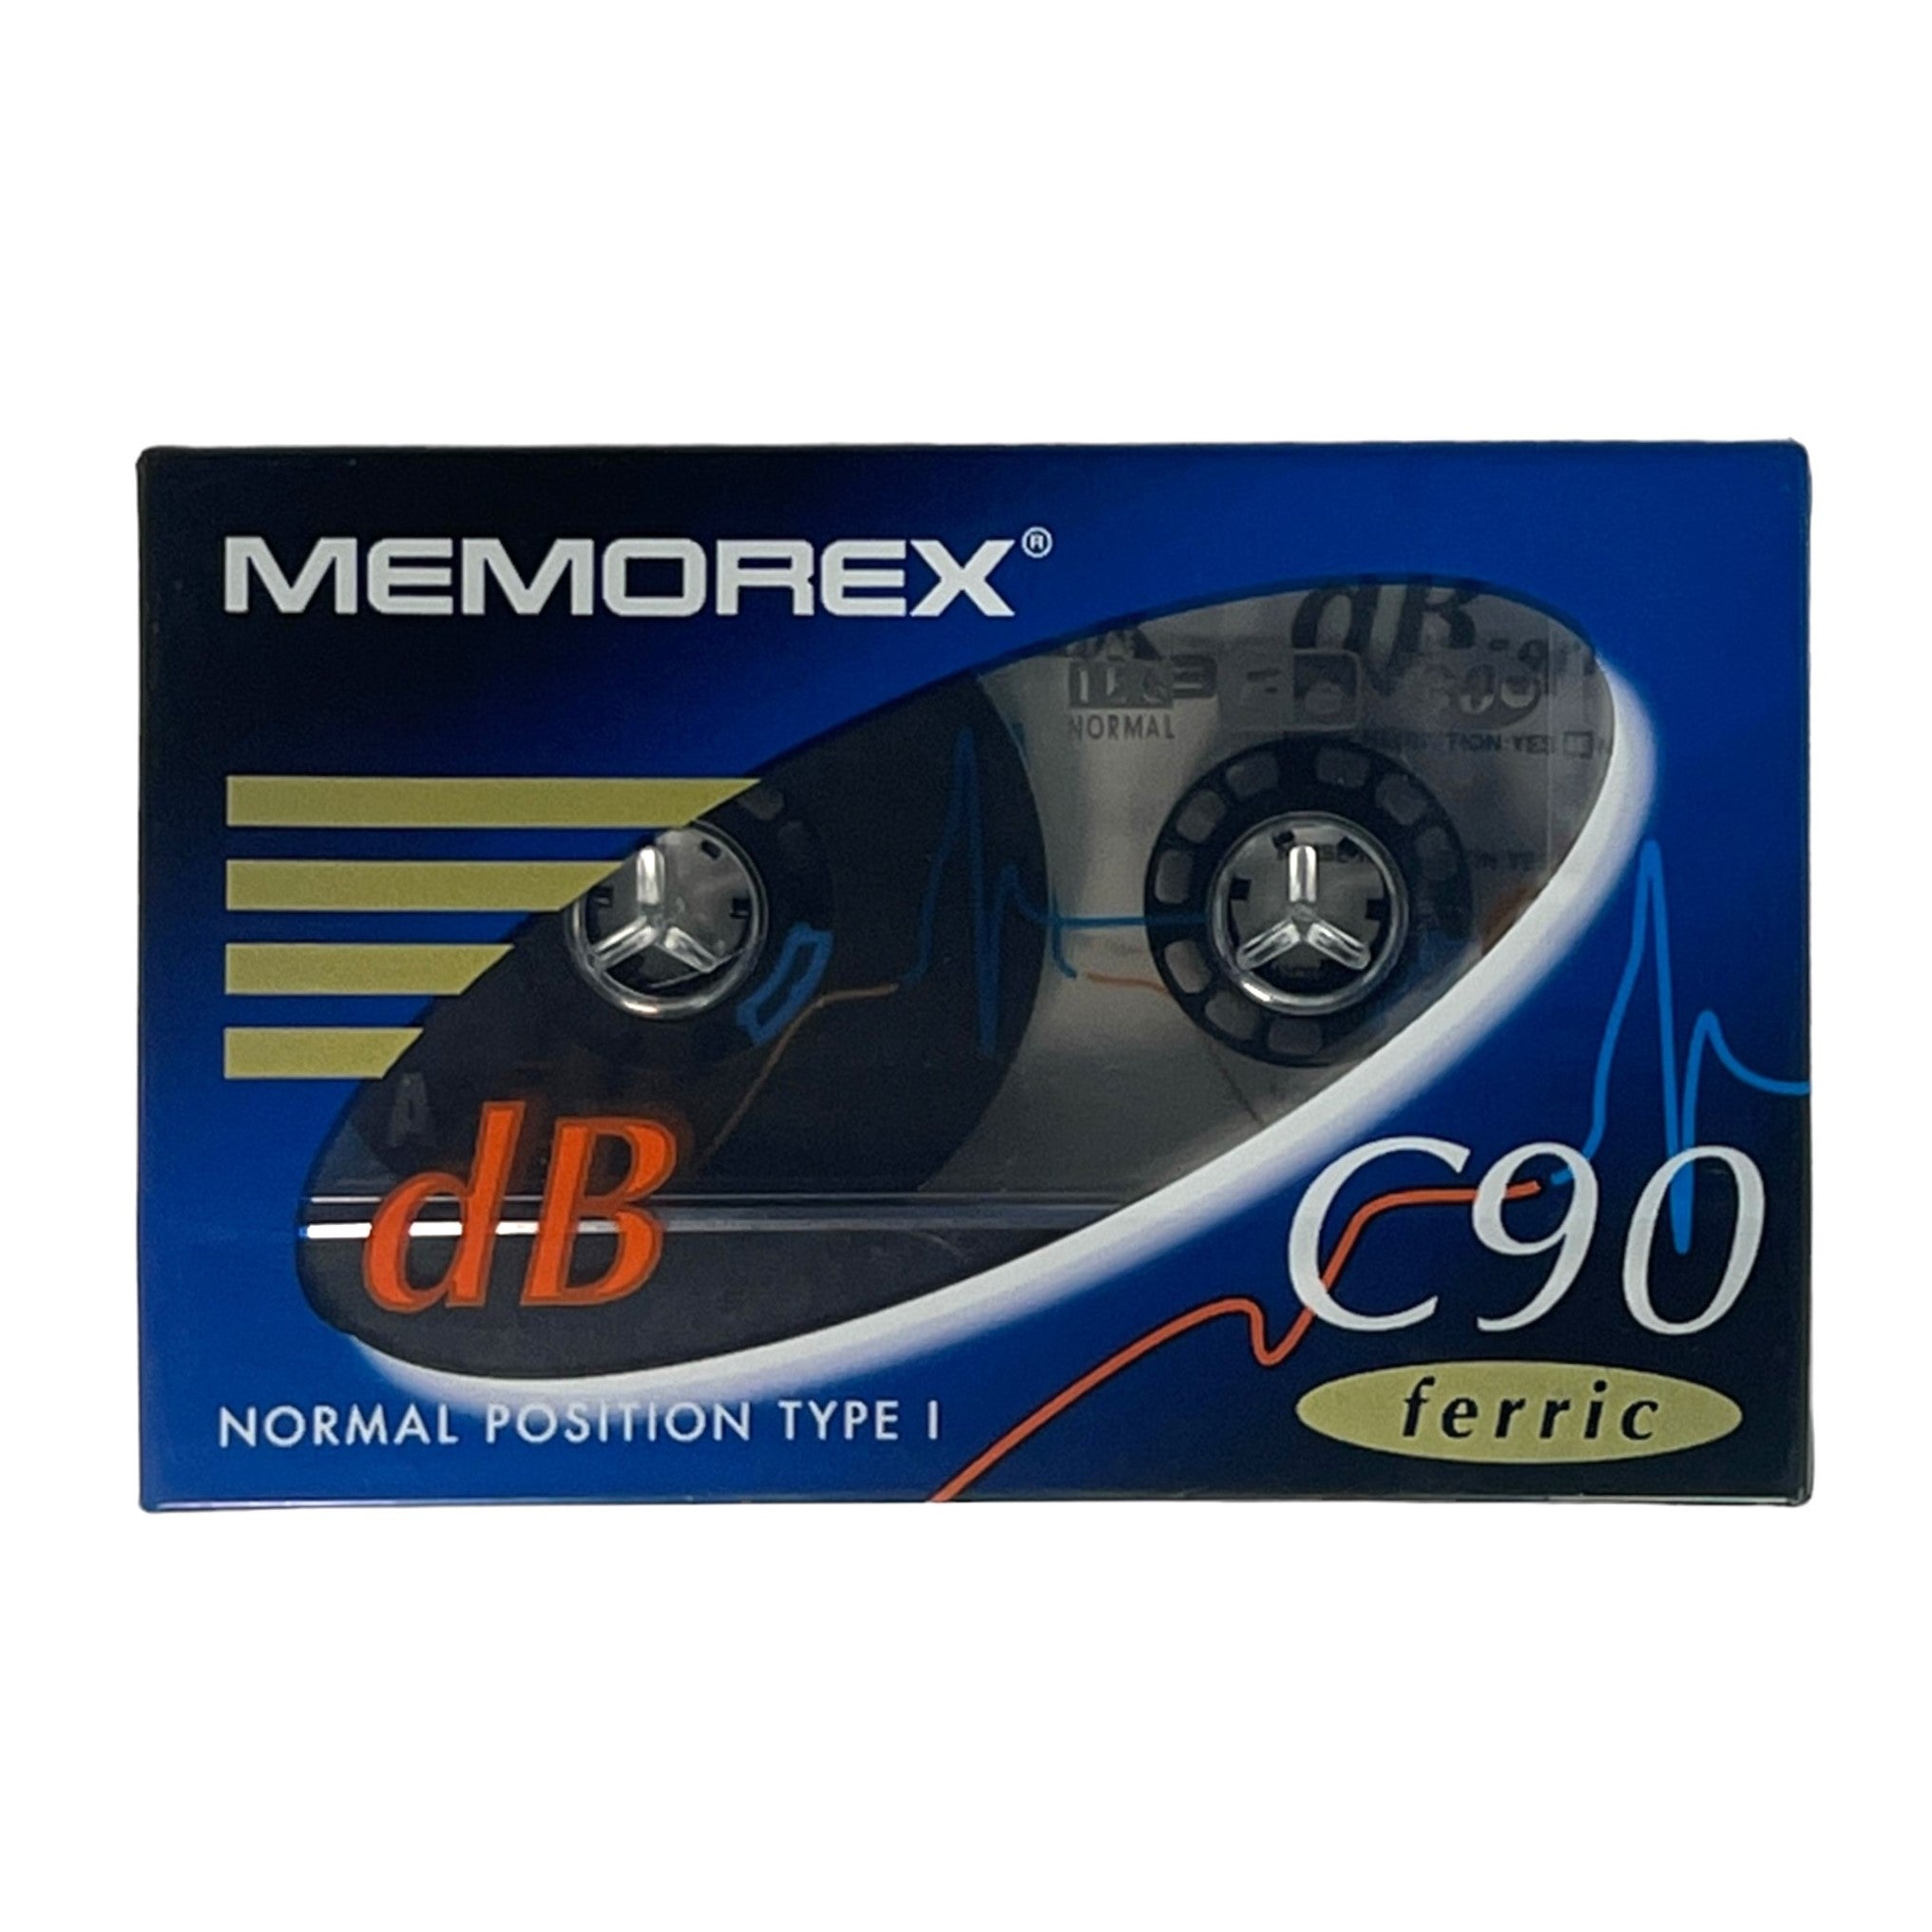 Memorex Audio Cassette db 90 Ferric